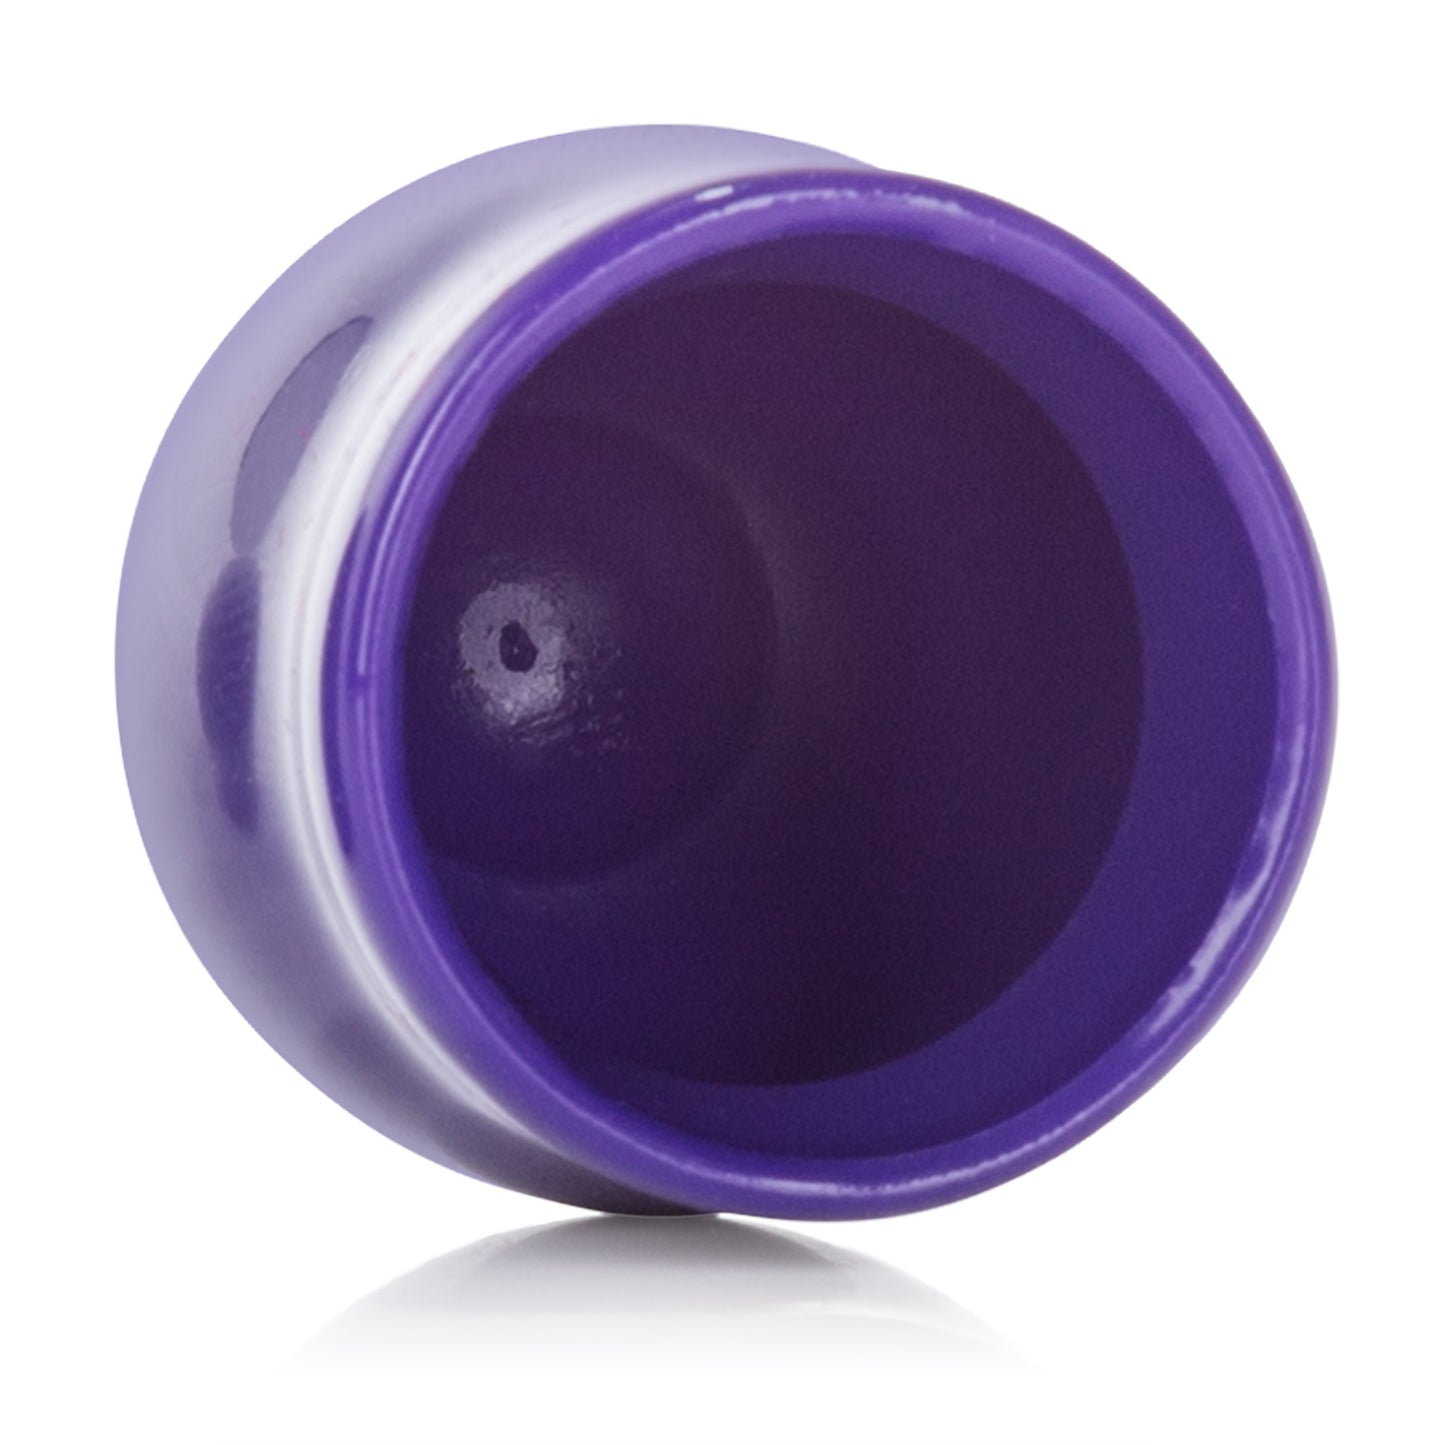 Nipple Play Mini Nipple Suckers - Purple SE2644252